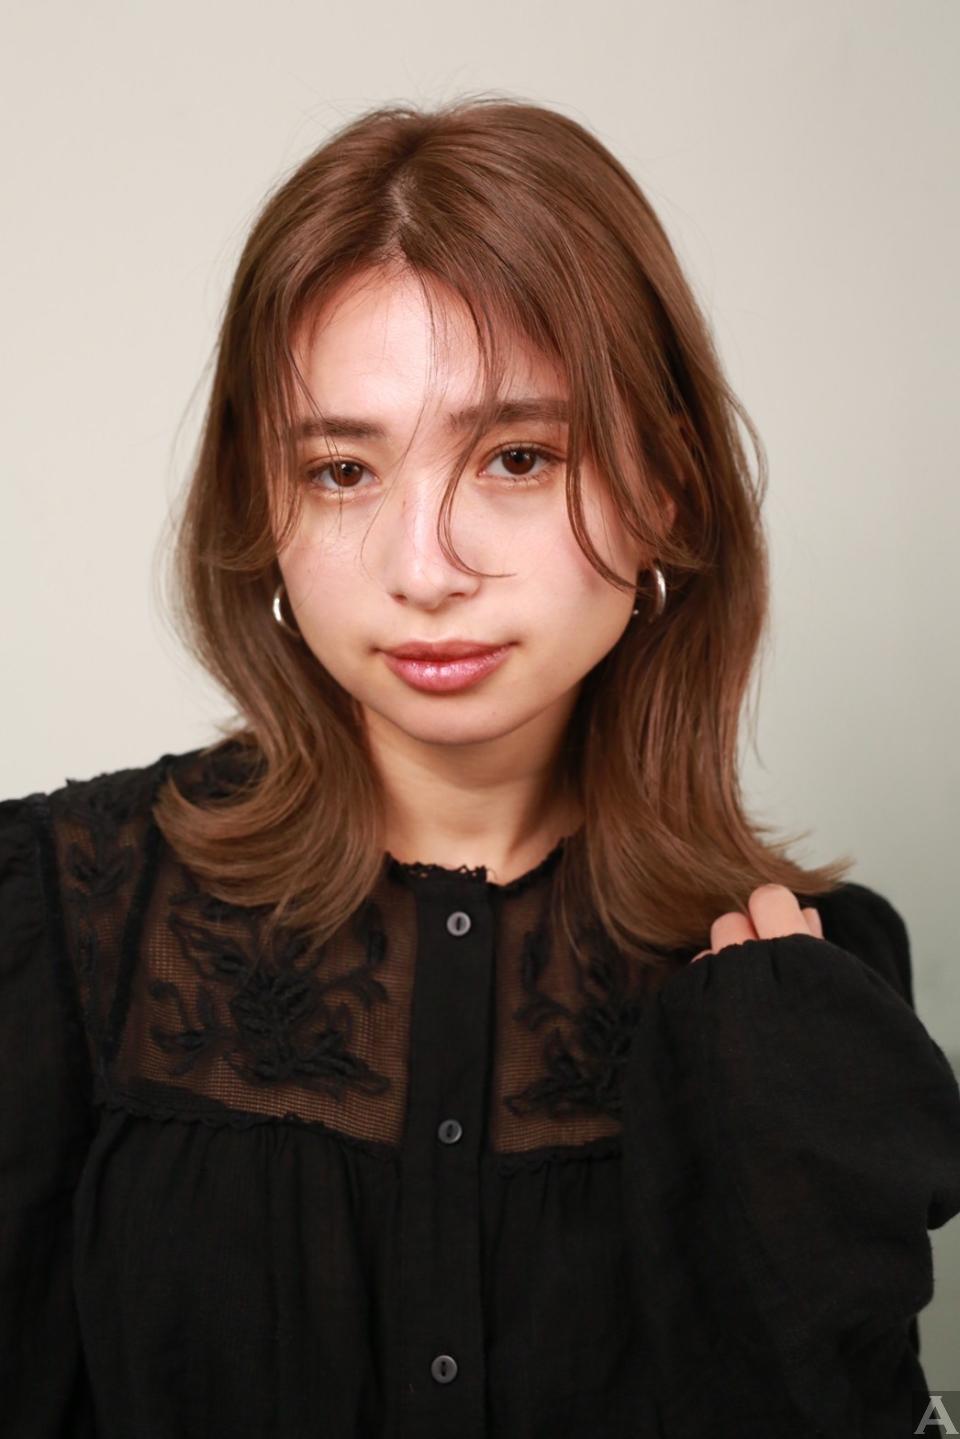 東京外国人モデル事務所アクアモデル所属のハーフモデルのマヤンジェロ